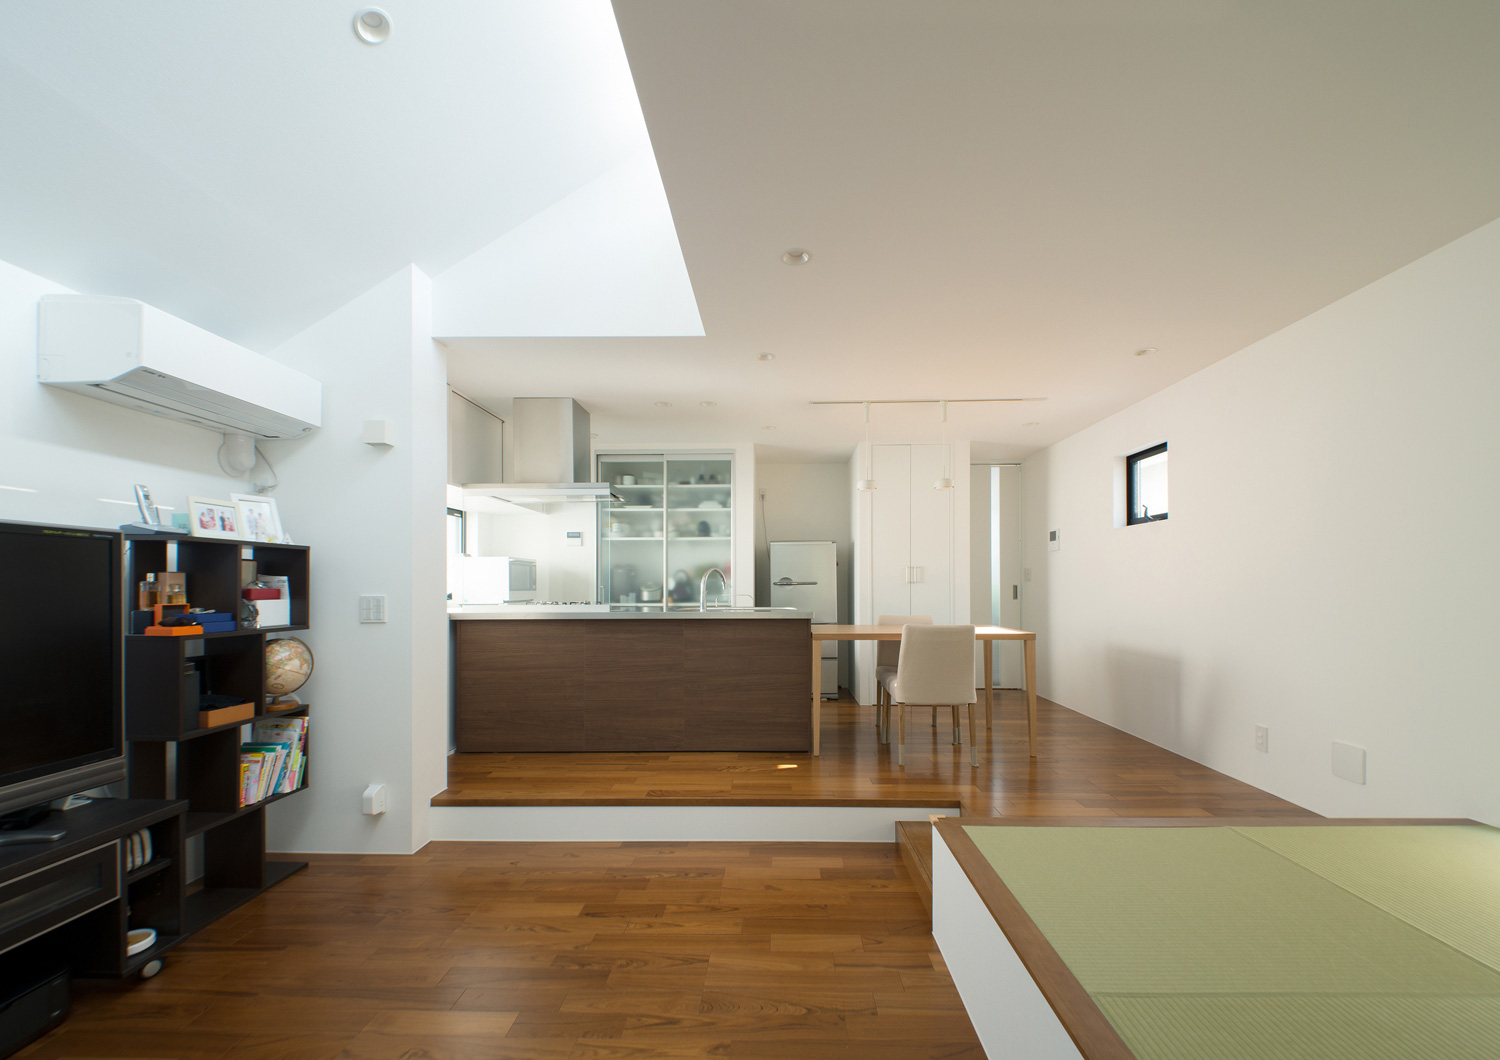 キッチンと横並びのダイニングテーブルがある高天井のLDK・デザイン住宅